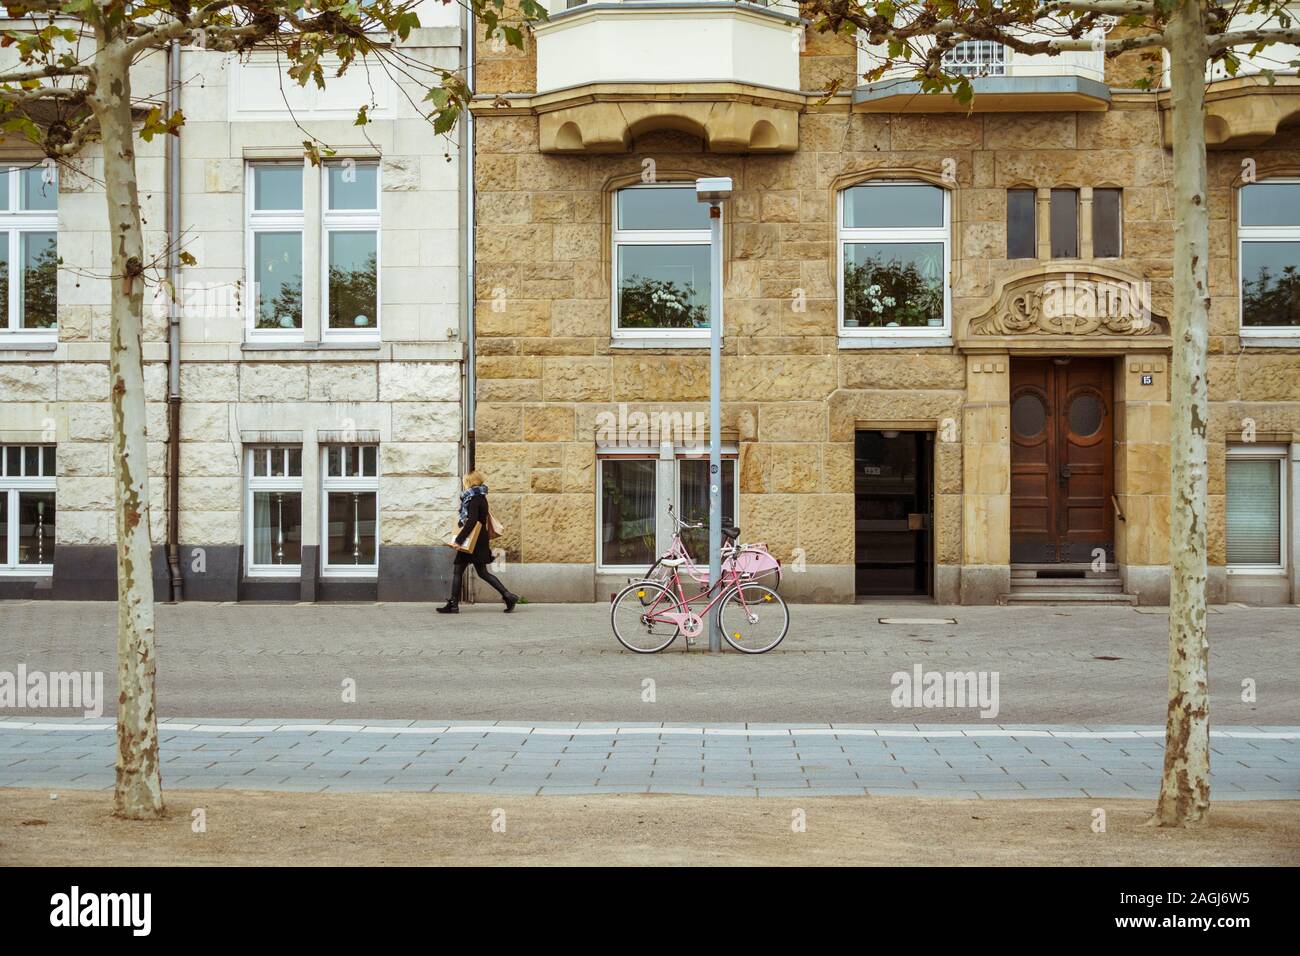 Location en stationnement sur rue. Un vélo de ville à Dusseldorf. Vélo urbain stationné sans que personne sur l'rue. Mode de transport écologique vélo dans Banque D'Images